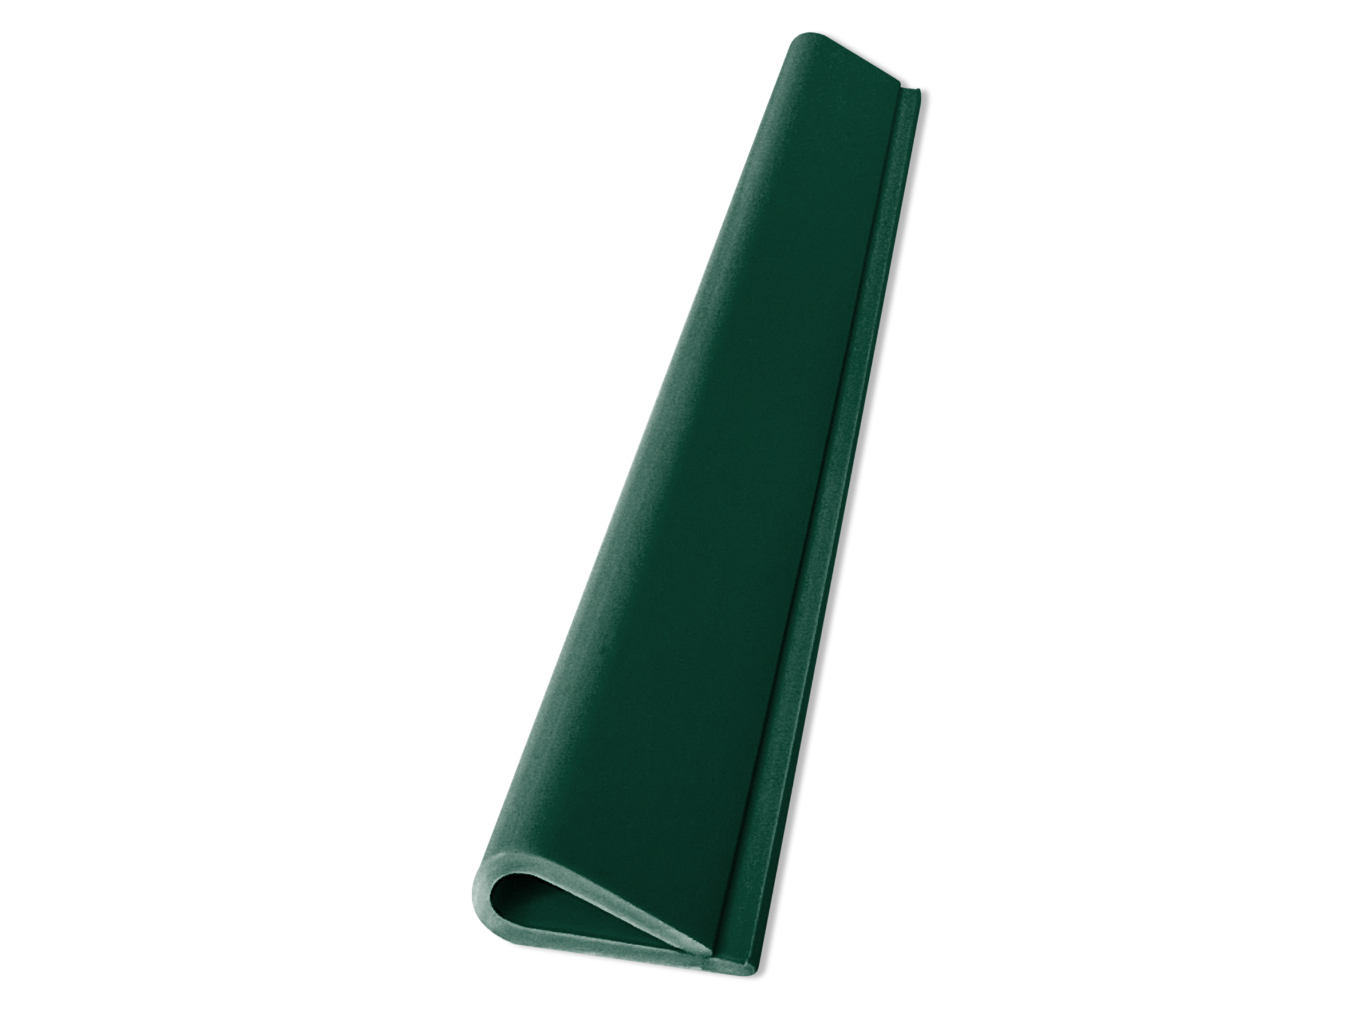 Zakončovací klip 19 cm, zelený – k plastovým pásům, balení 20 ks